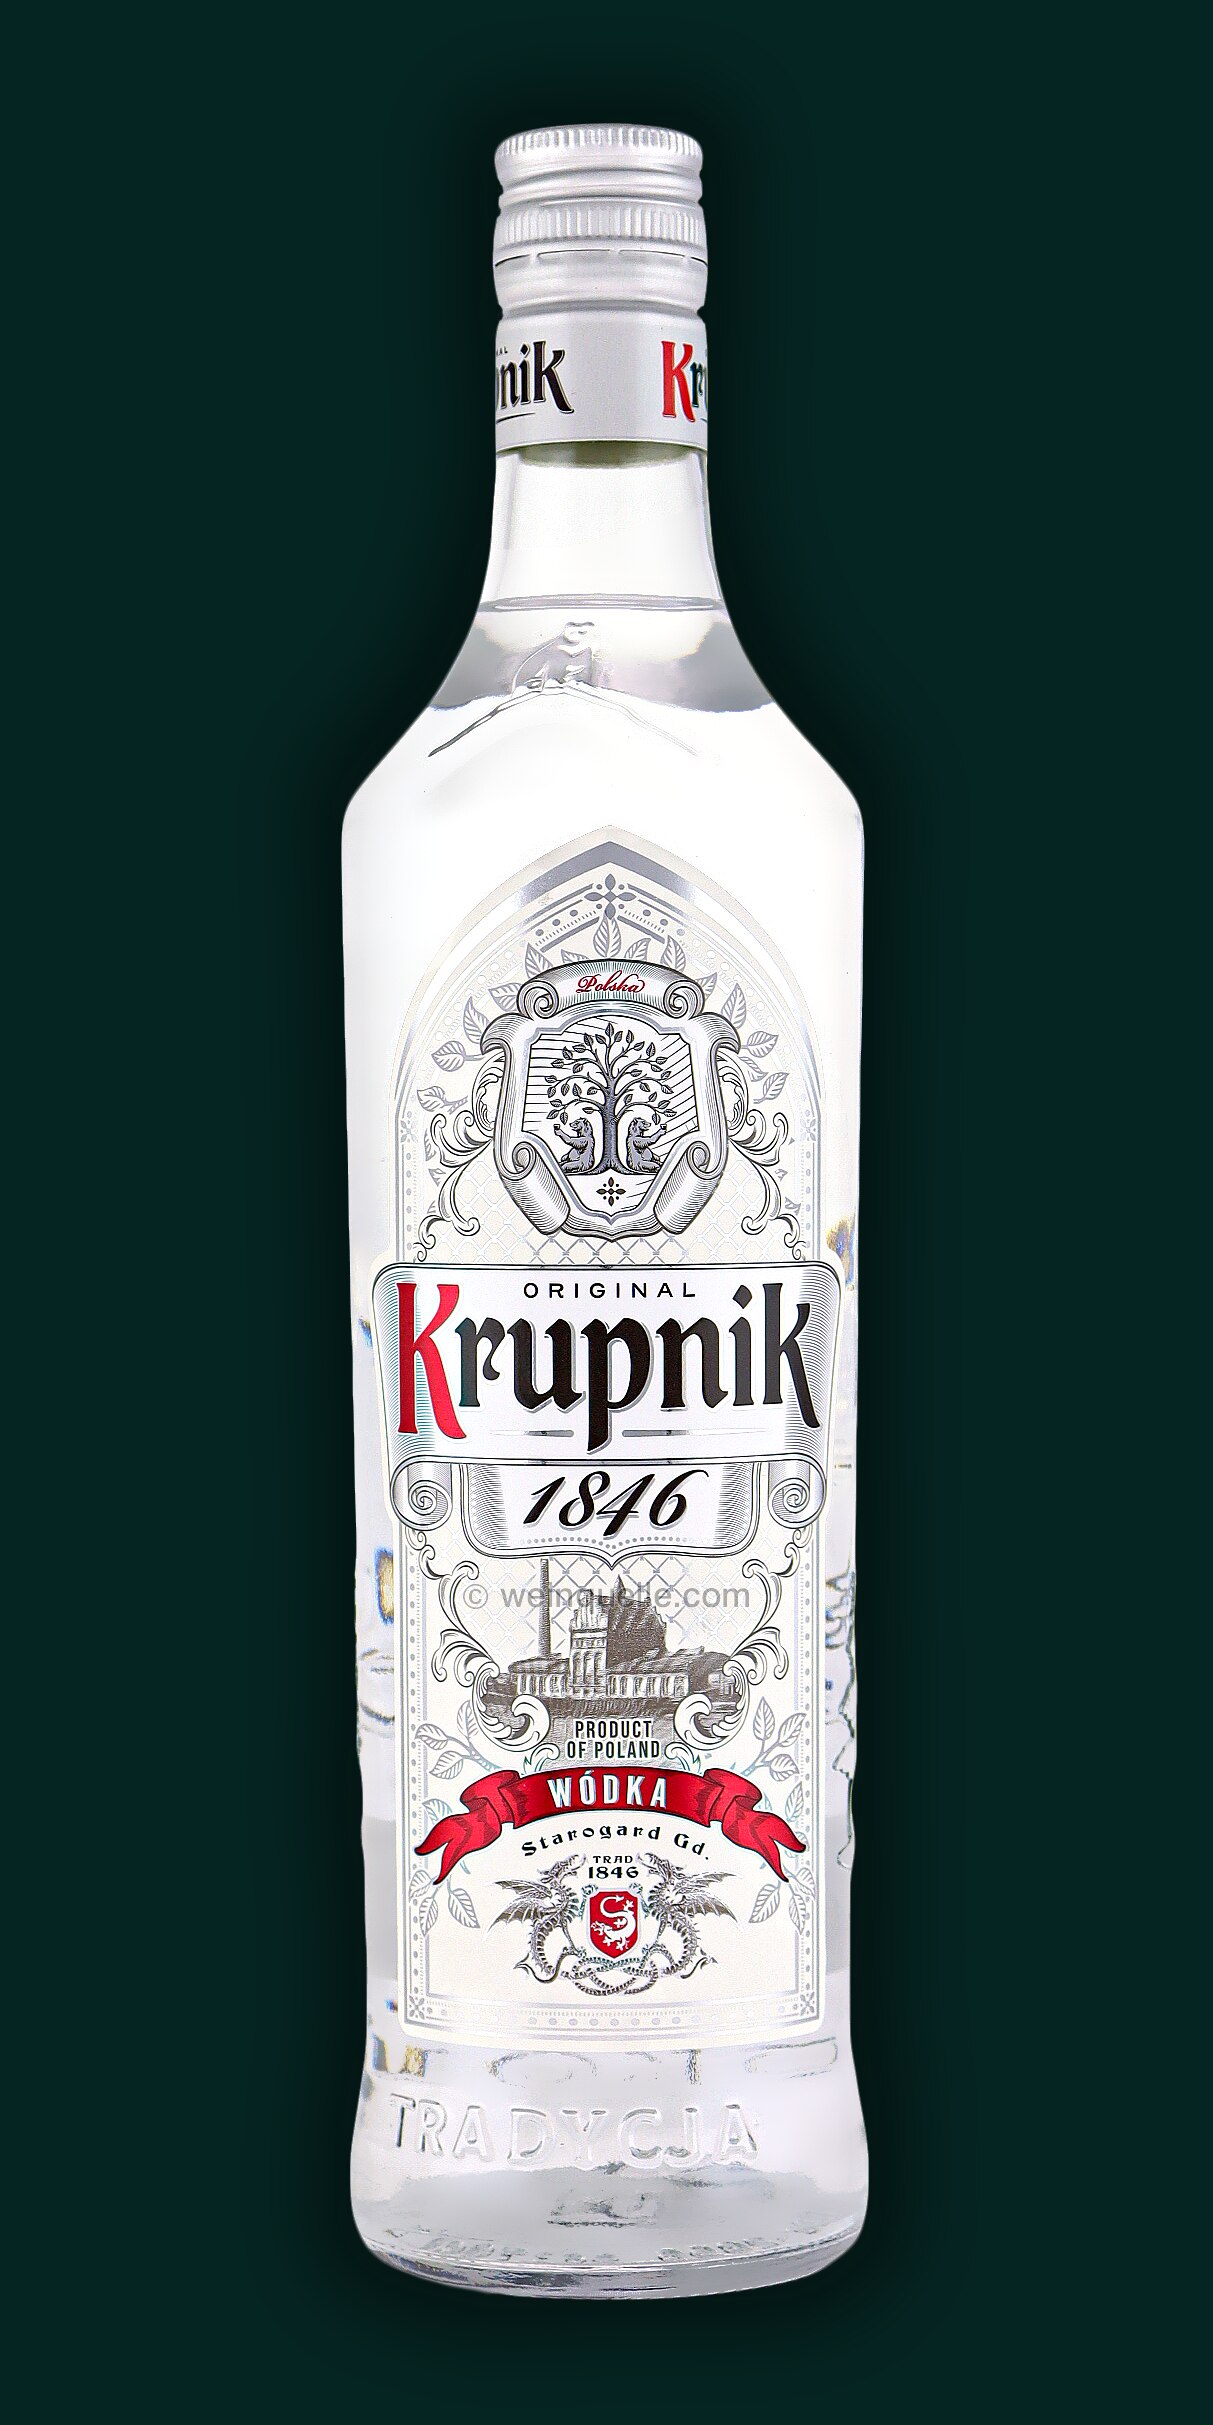 Weinquelle 40% € Premium - Krupnik Lühmann Vodka, 11,95